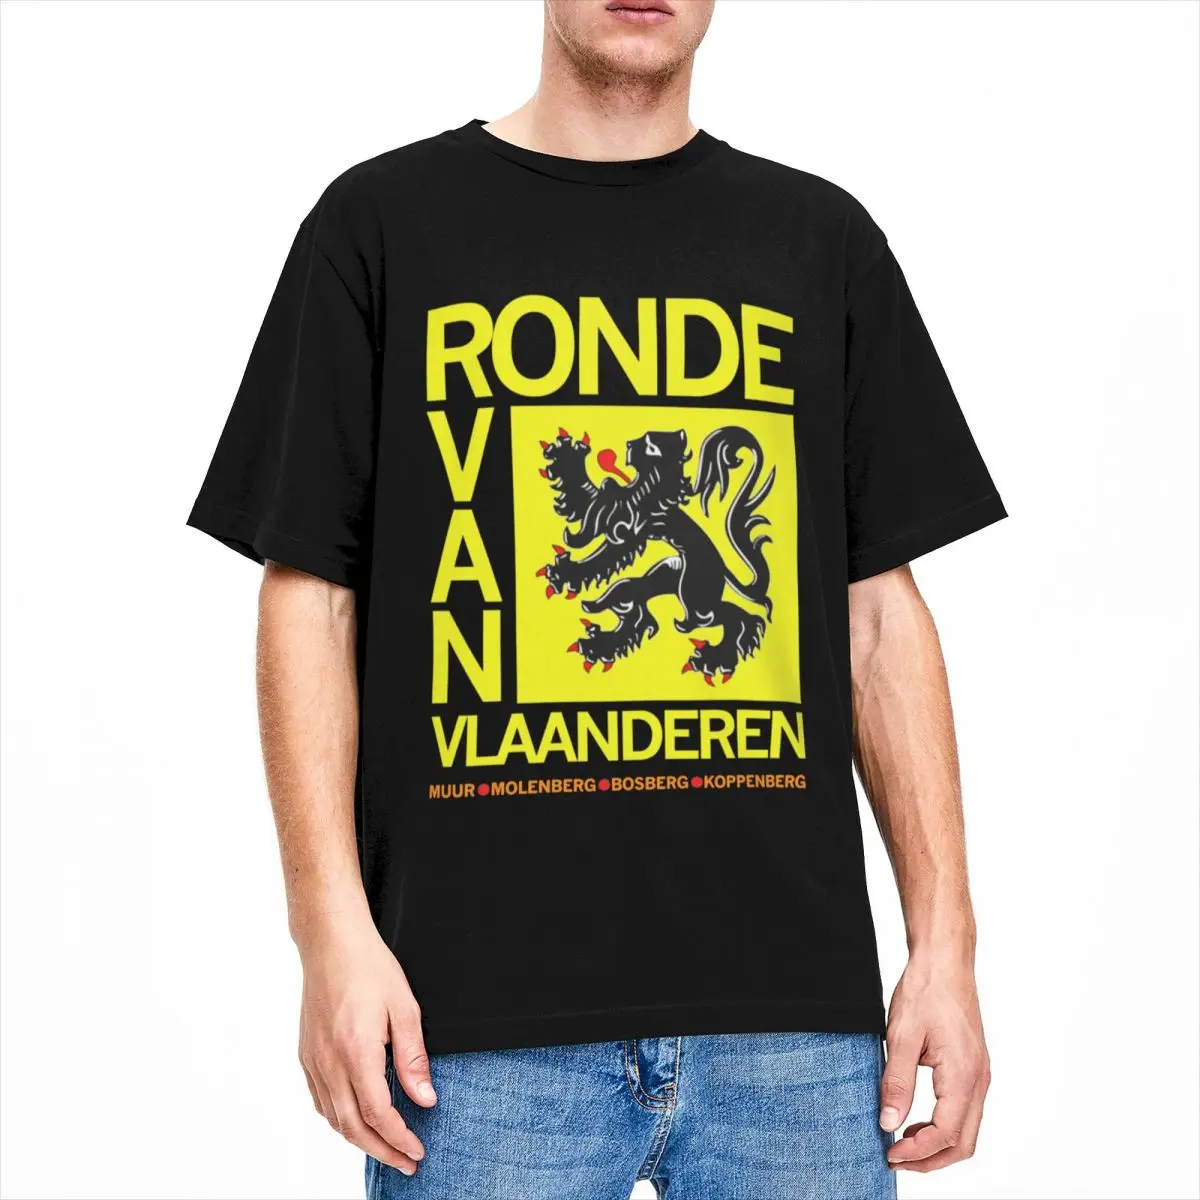 

Novelty Tour Of Flanders Flag Ronde Van Vlaanderen T-Shirt Men Women's Crew Neck 100% Cotton Short Sleeve Tees Printing Clothing